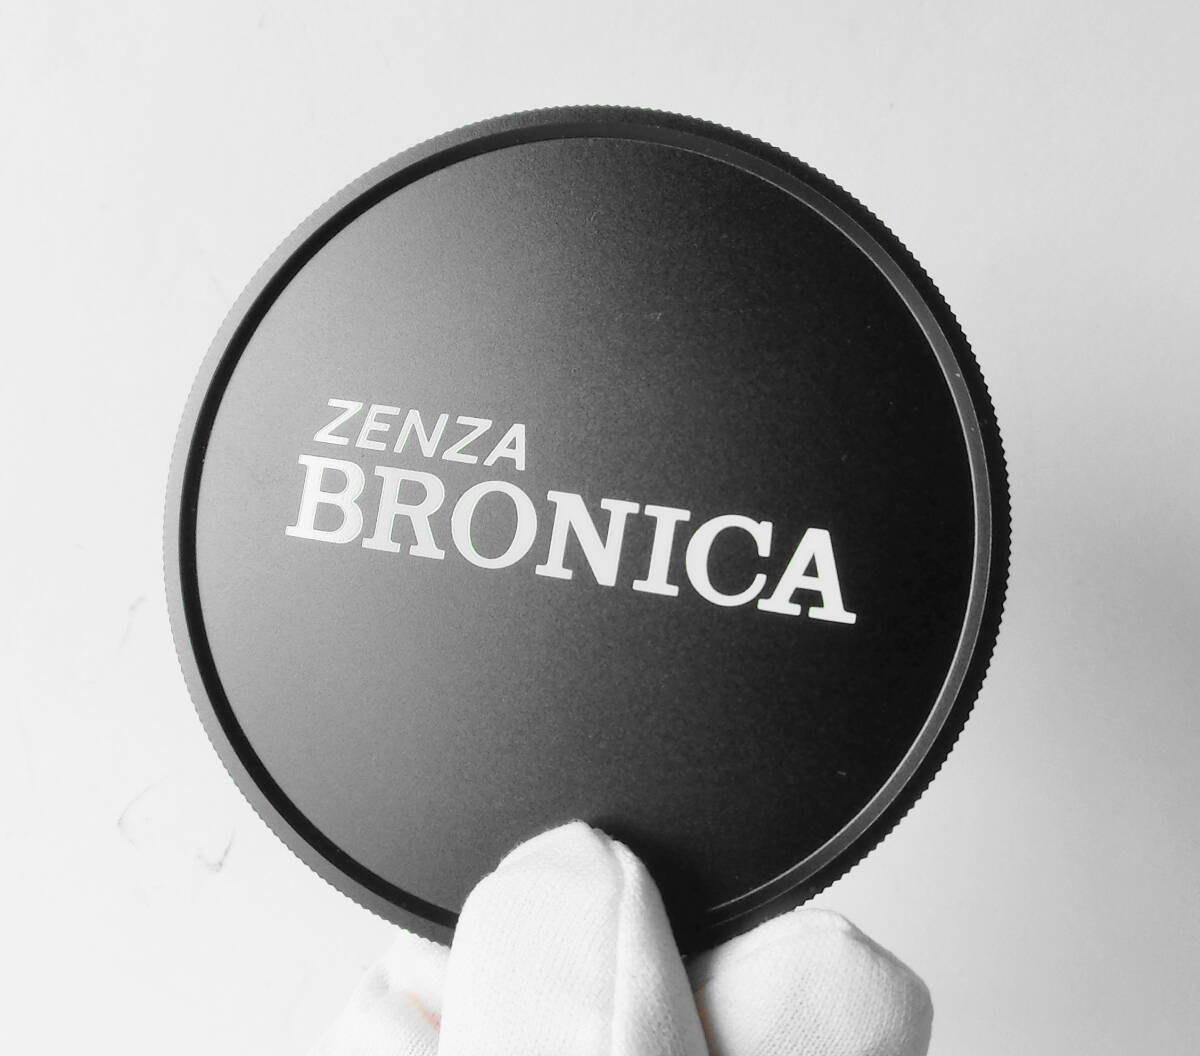 ★ ブロニカ ZENZA BRONICA メタルキャップ 77φ_画像5